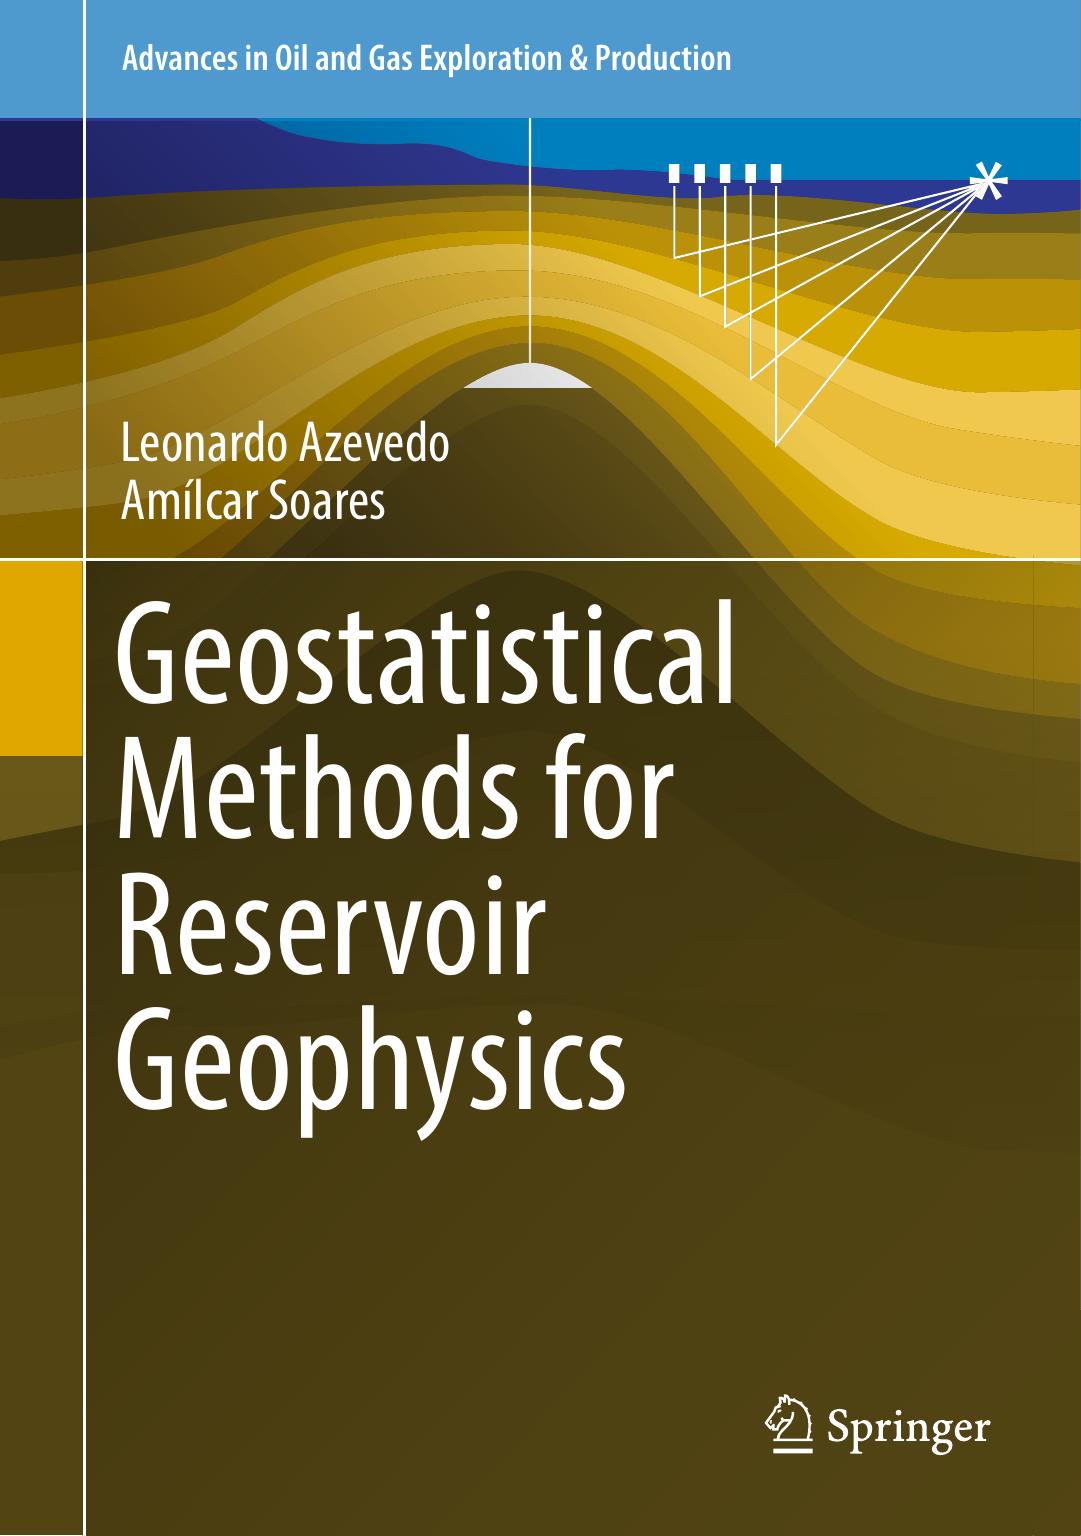 Geostatistical Methods for Reservoir Geophysics2017 ( PDFDrive.com )